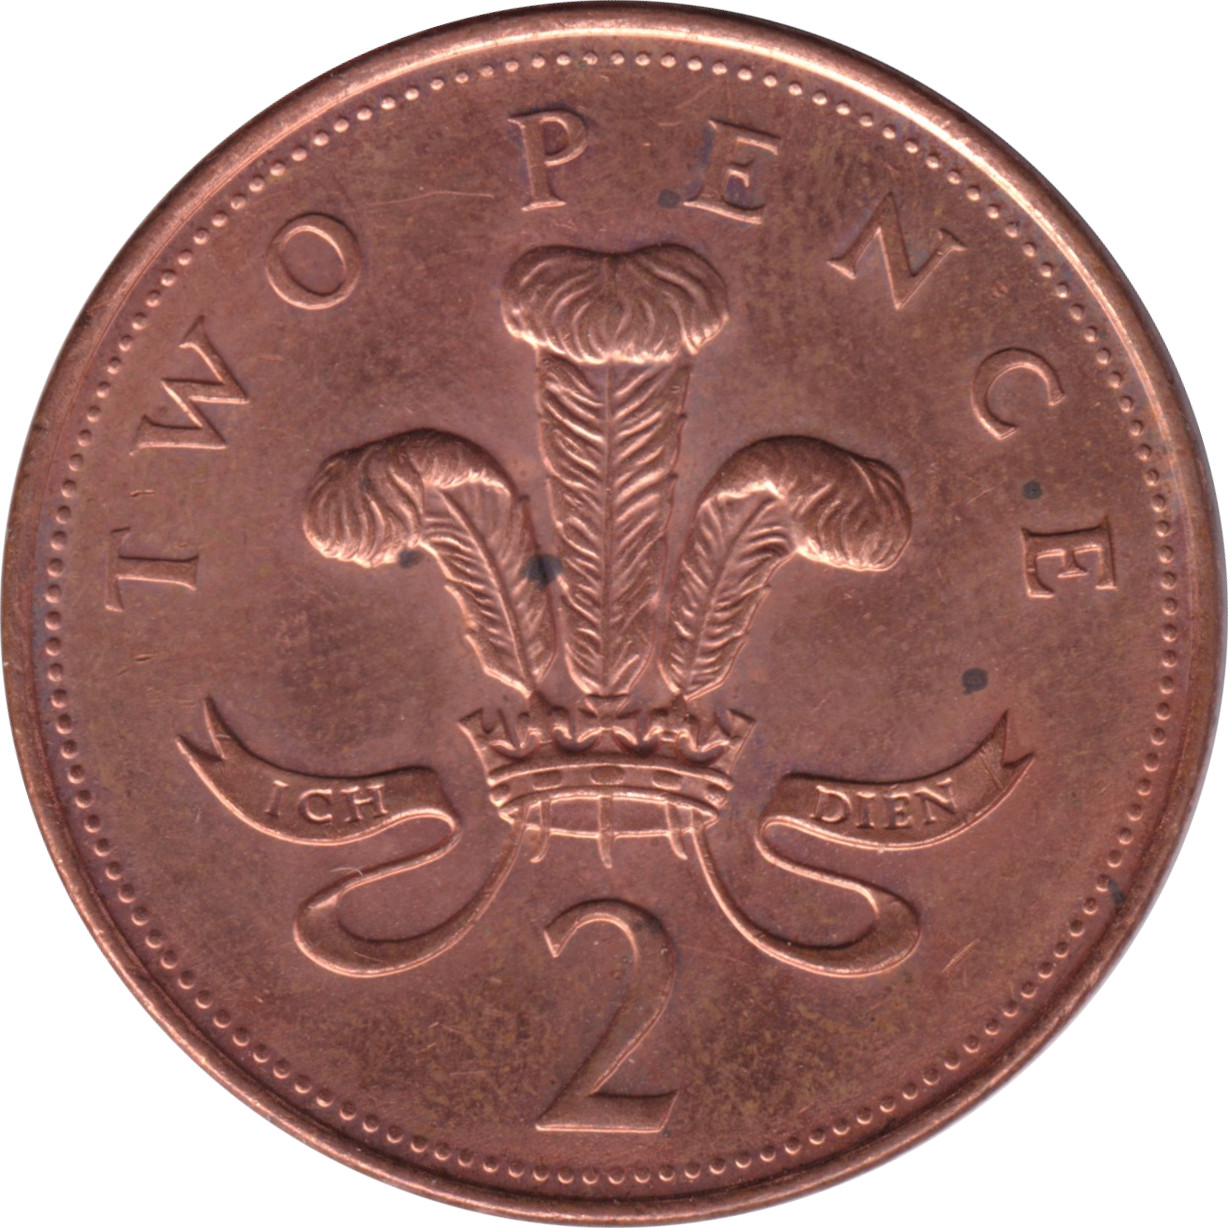 2 pence - Elizabeth II - Tête agée - Chapeau